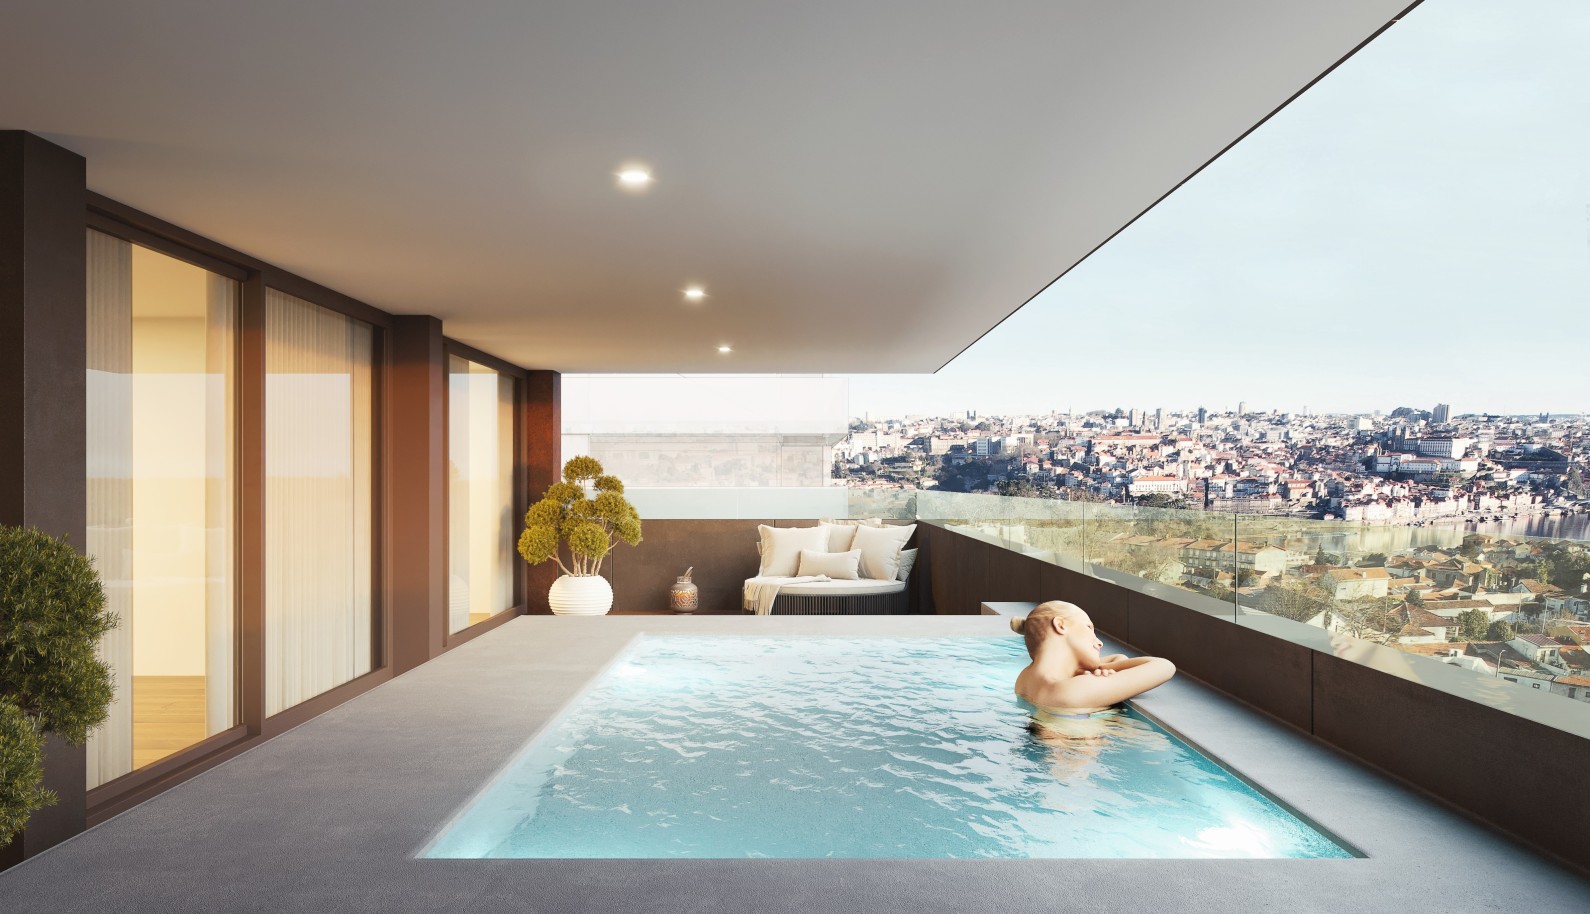 Apartamento novo com piscina, para venda, em Gaia, Porto, Portugal_234514